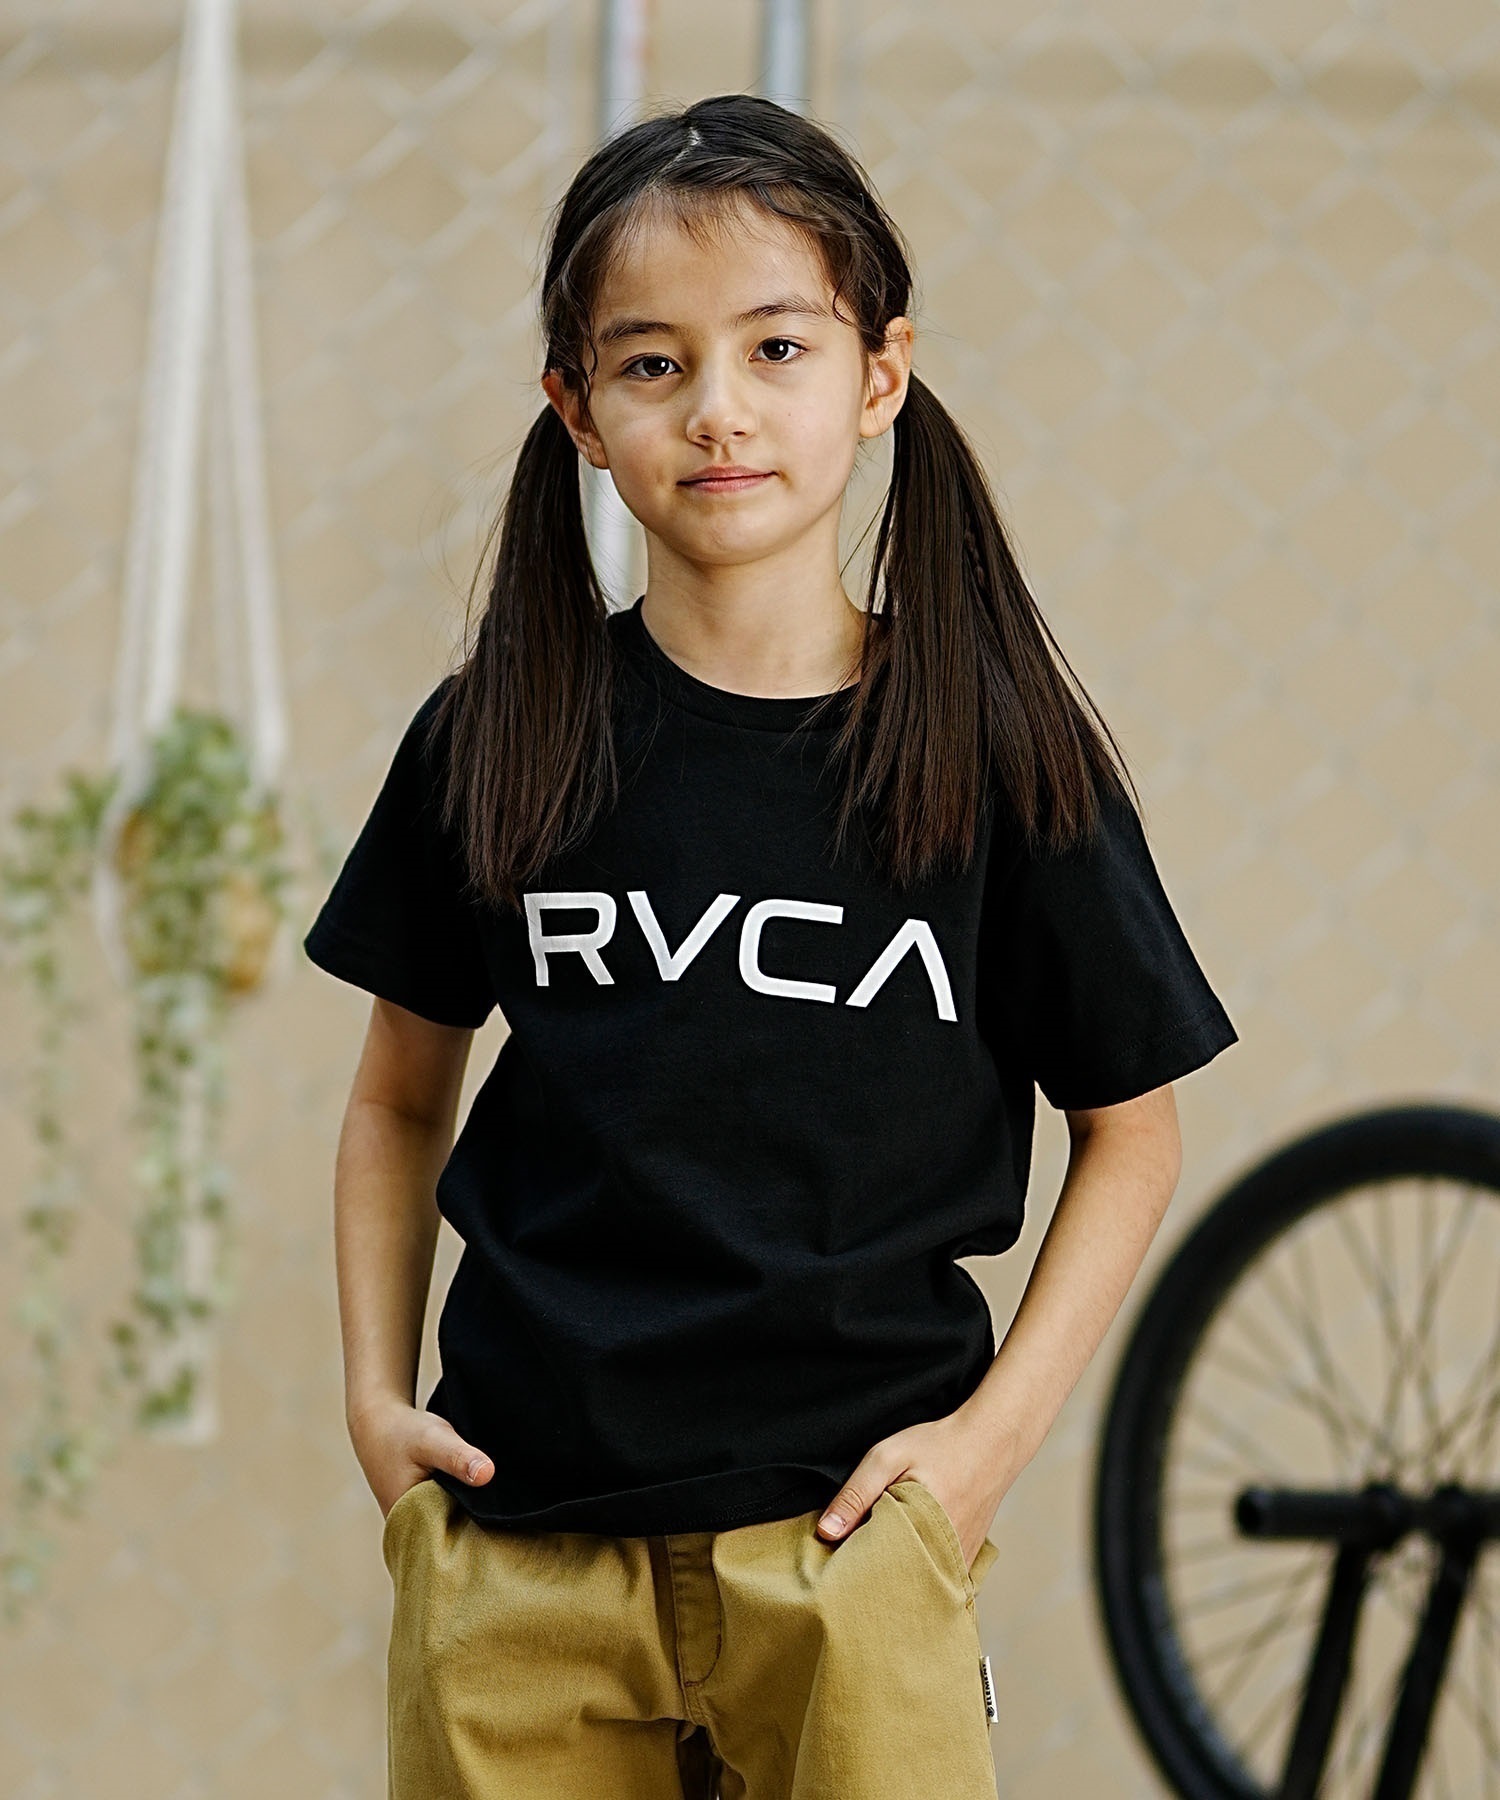 【クーポン対象】RVCA ルーカ キッズ 半袖Tシャツ 定番ロゴデザイン 親子コーデ BE045-226(KVCY-130cm)